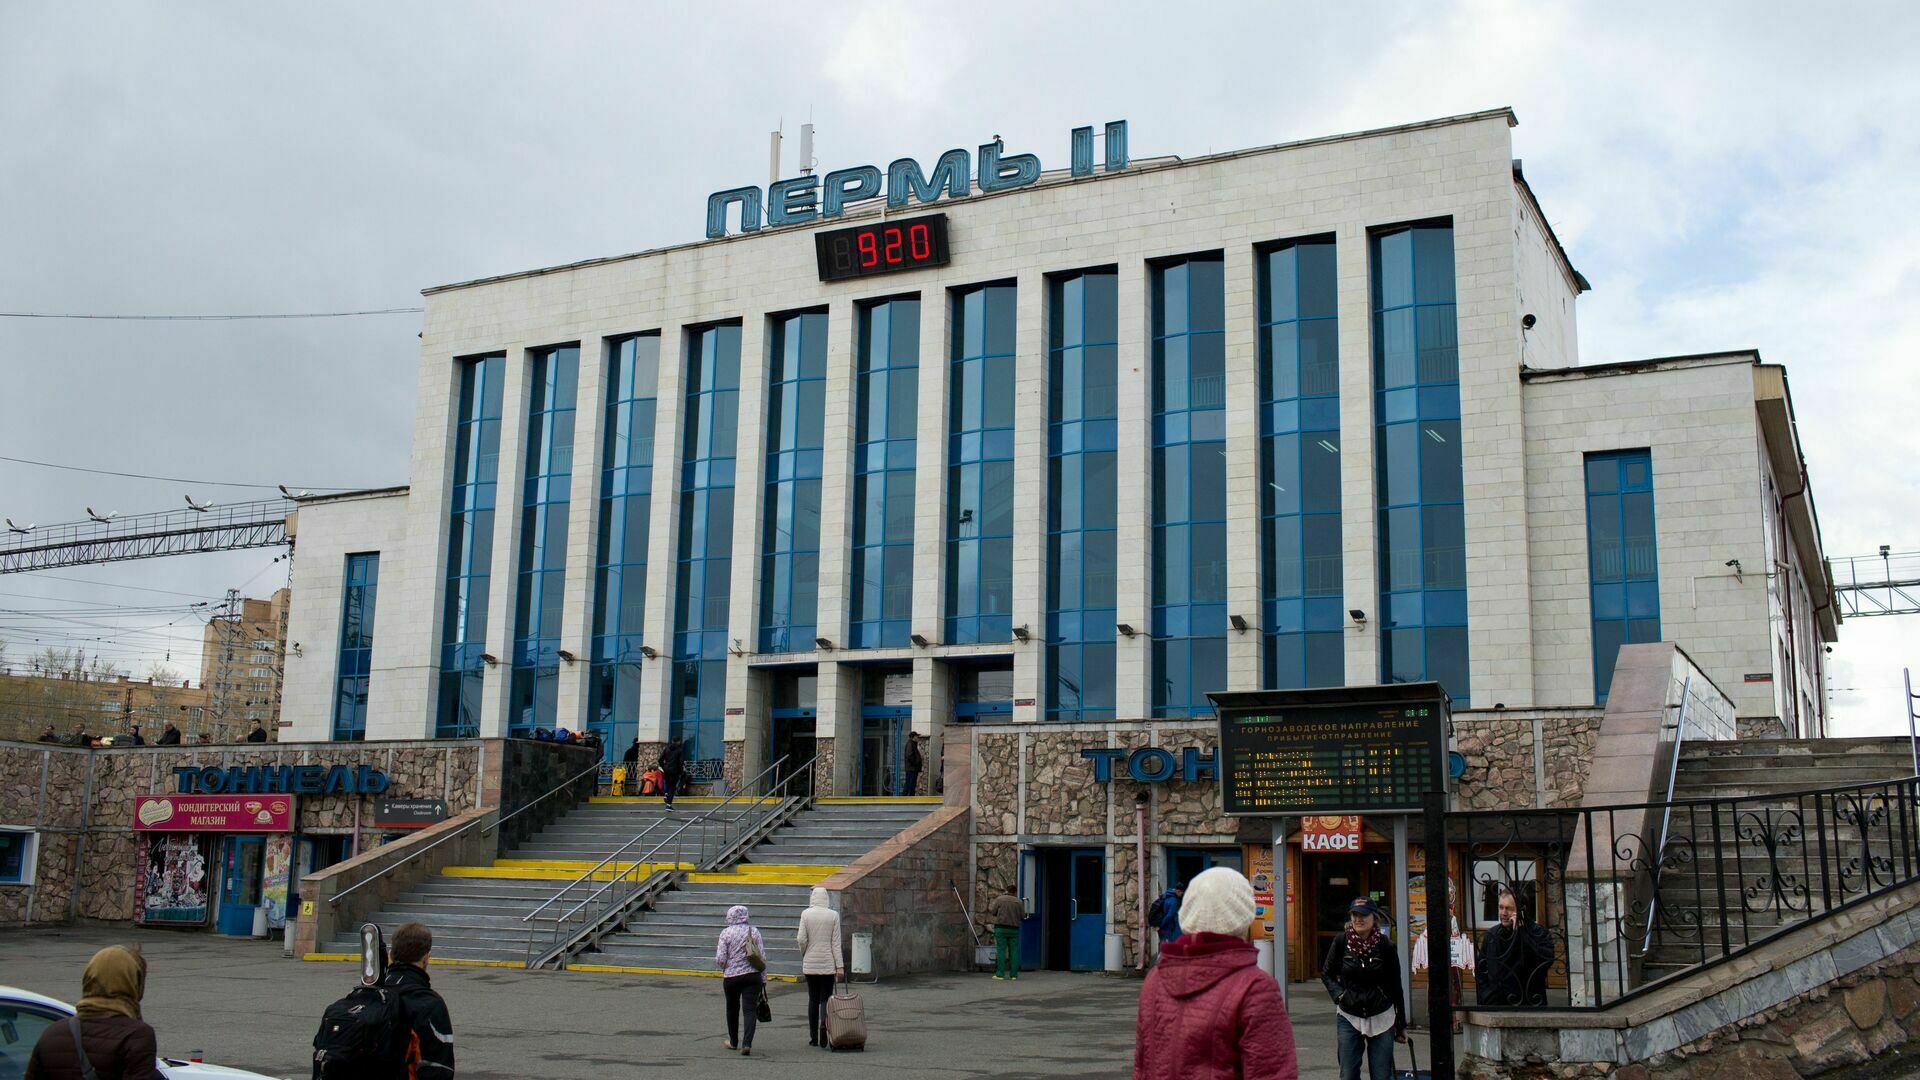 Полиция оцепила железнодорожный вокзал Пермь II, но никого не эвакуировала